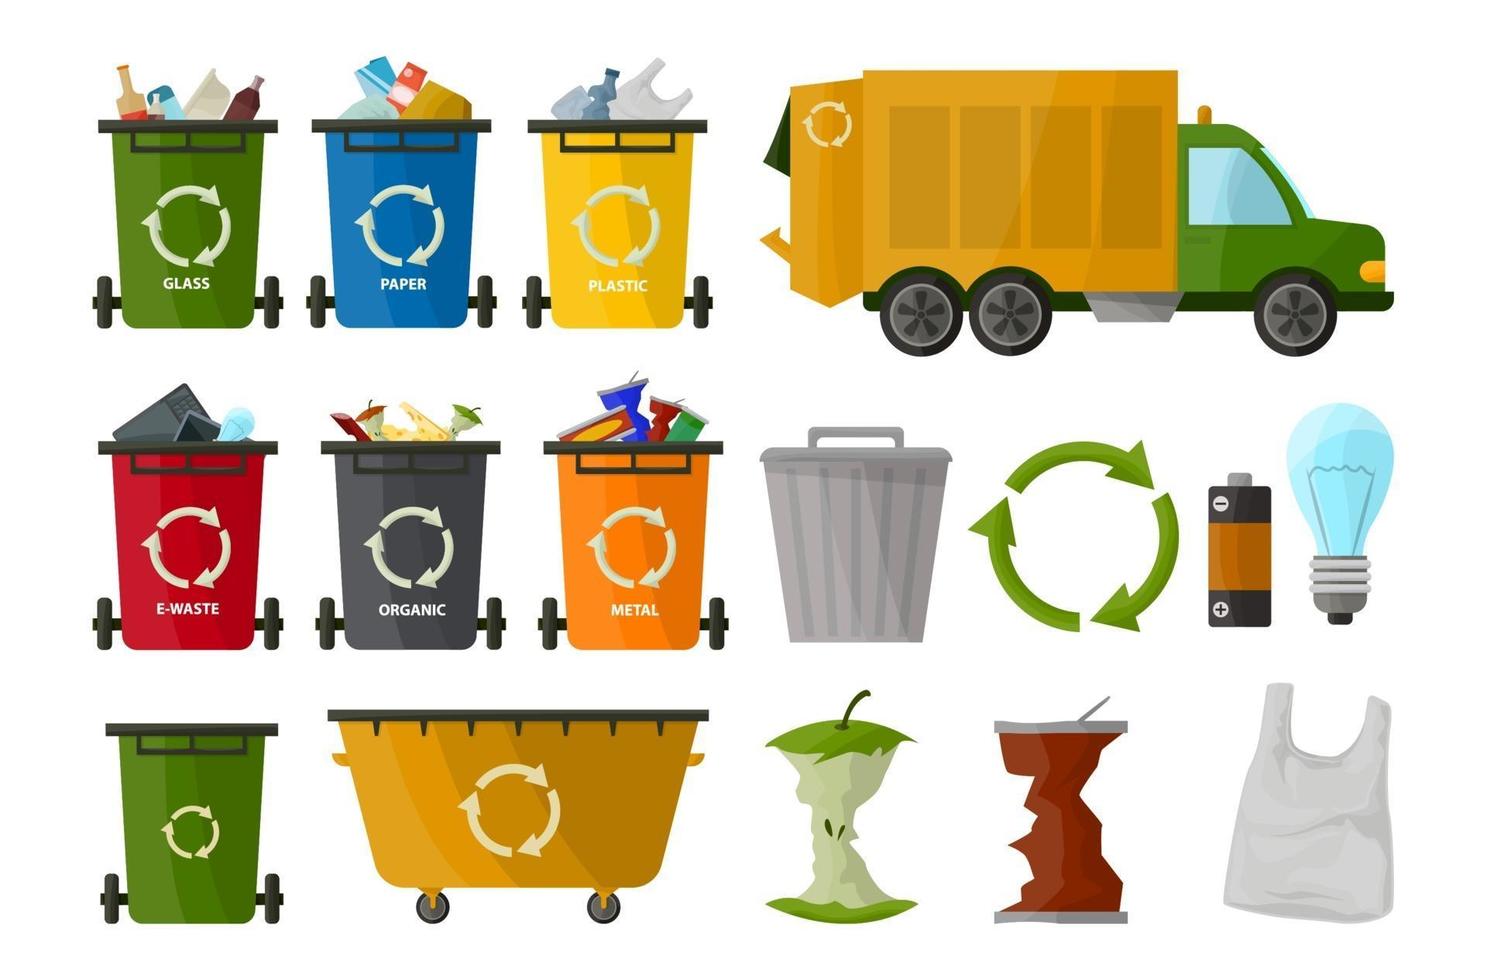 camion della spazzatura e vari tipi di bidone della spazzatura isolati su sfondo bianco in stile cartone animato. raccolta bidone della spazzatura. contenitore. segno di elaborazione dei rifiuti vettore